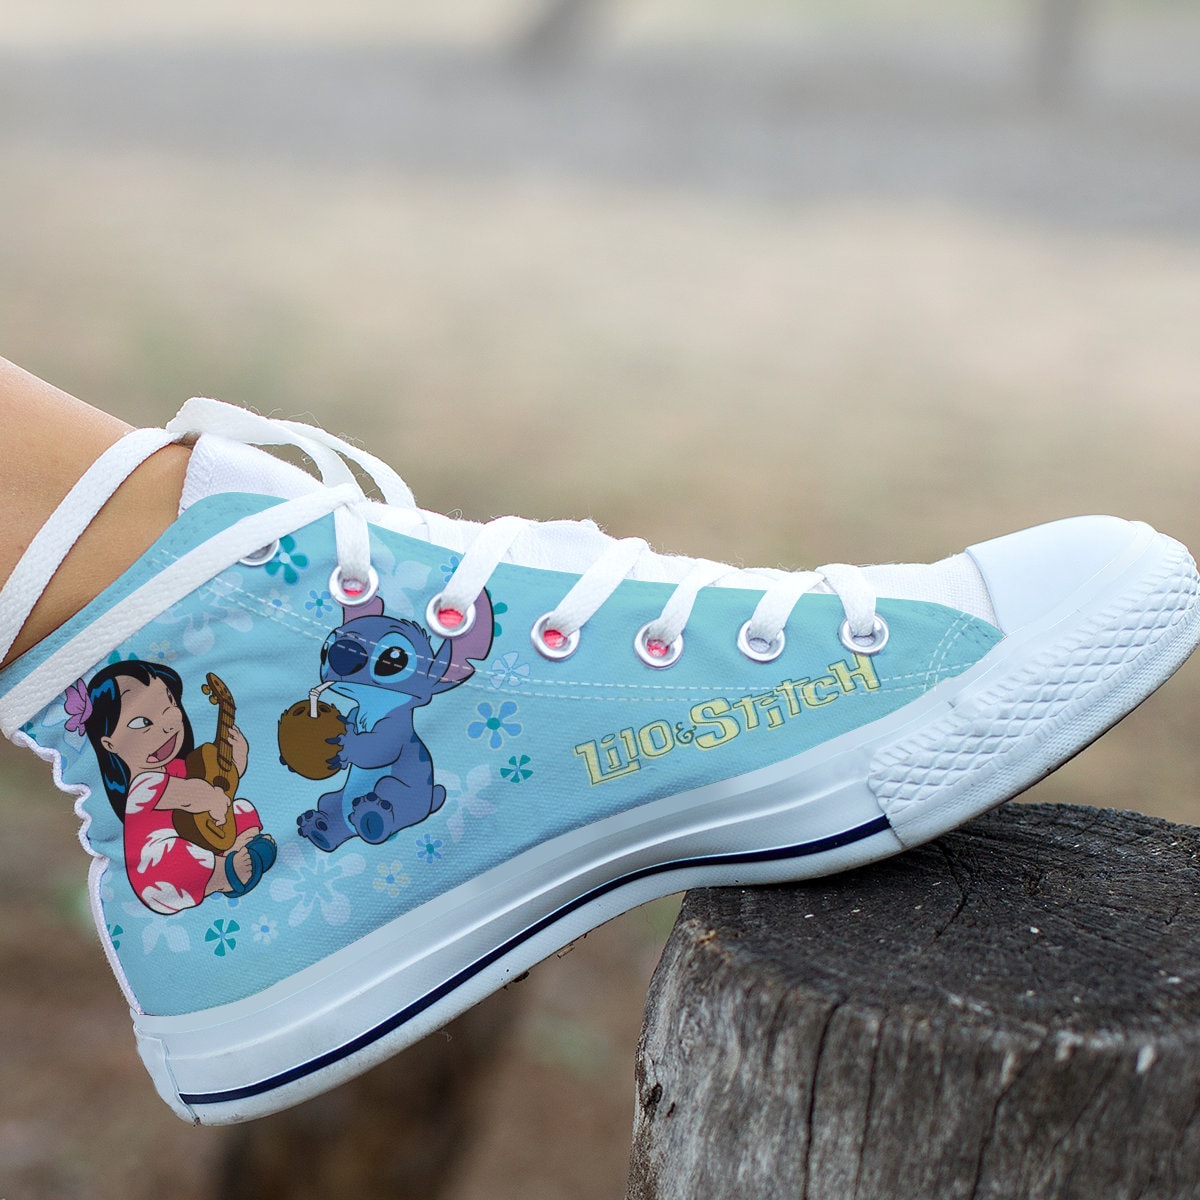 Scarpe Lilo e Stitch, Sneaker alta Lilo e Stitch, Lilo e Stitch Fan  Converse alta stile, scarpa personalizzata, scarpa mamma papà bambino -   Italia